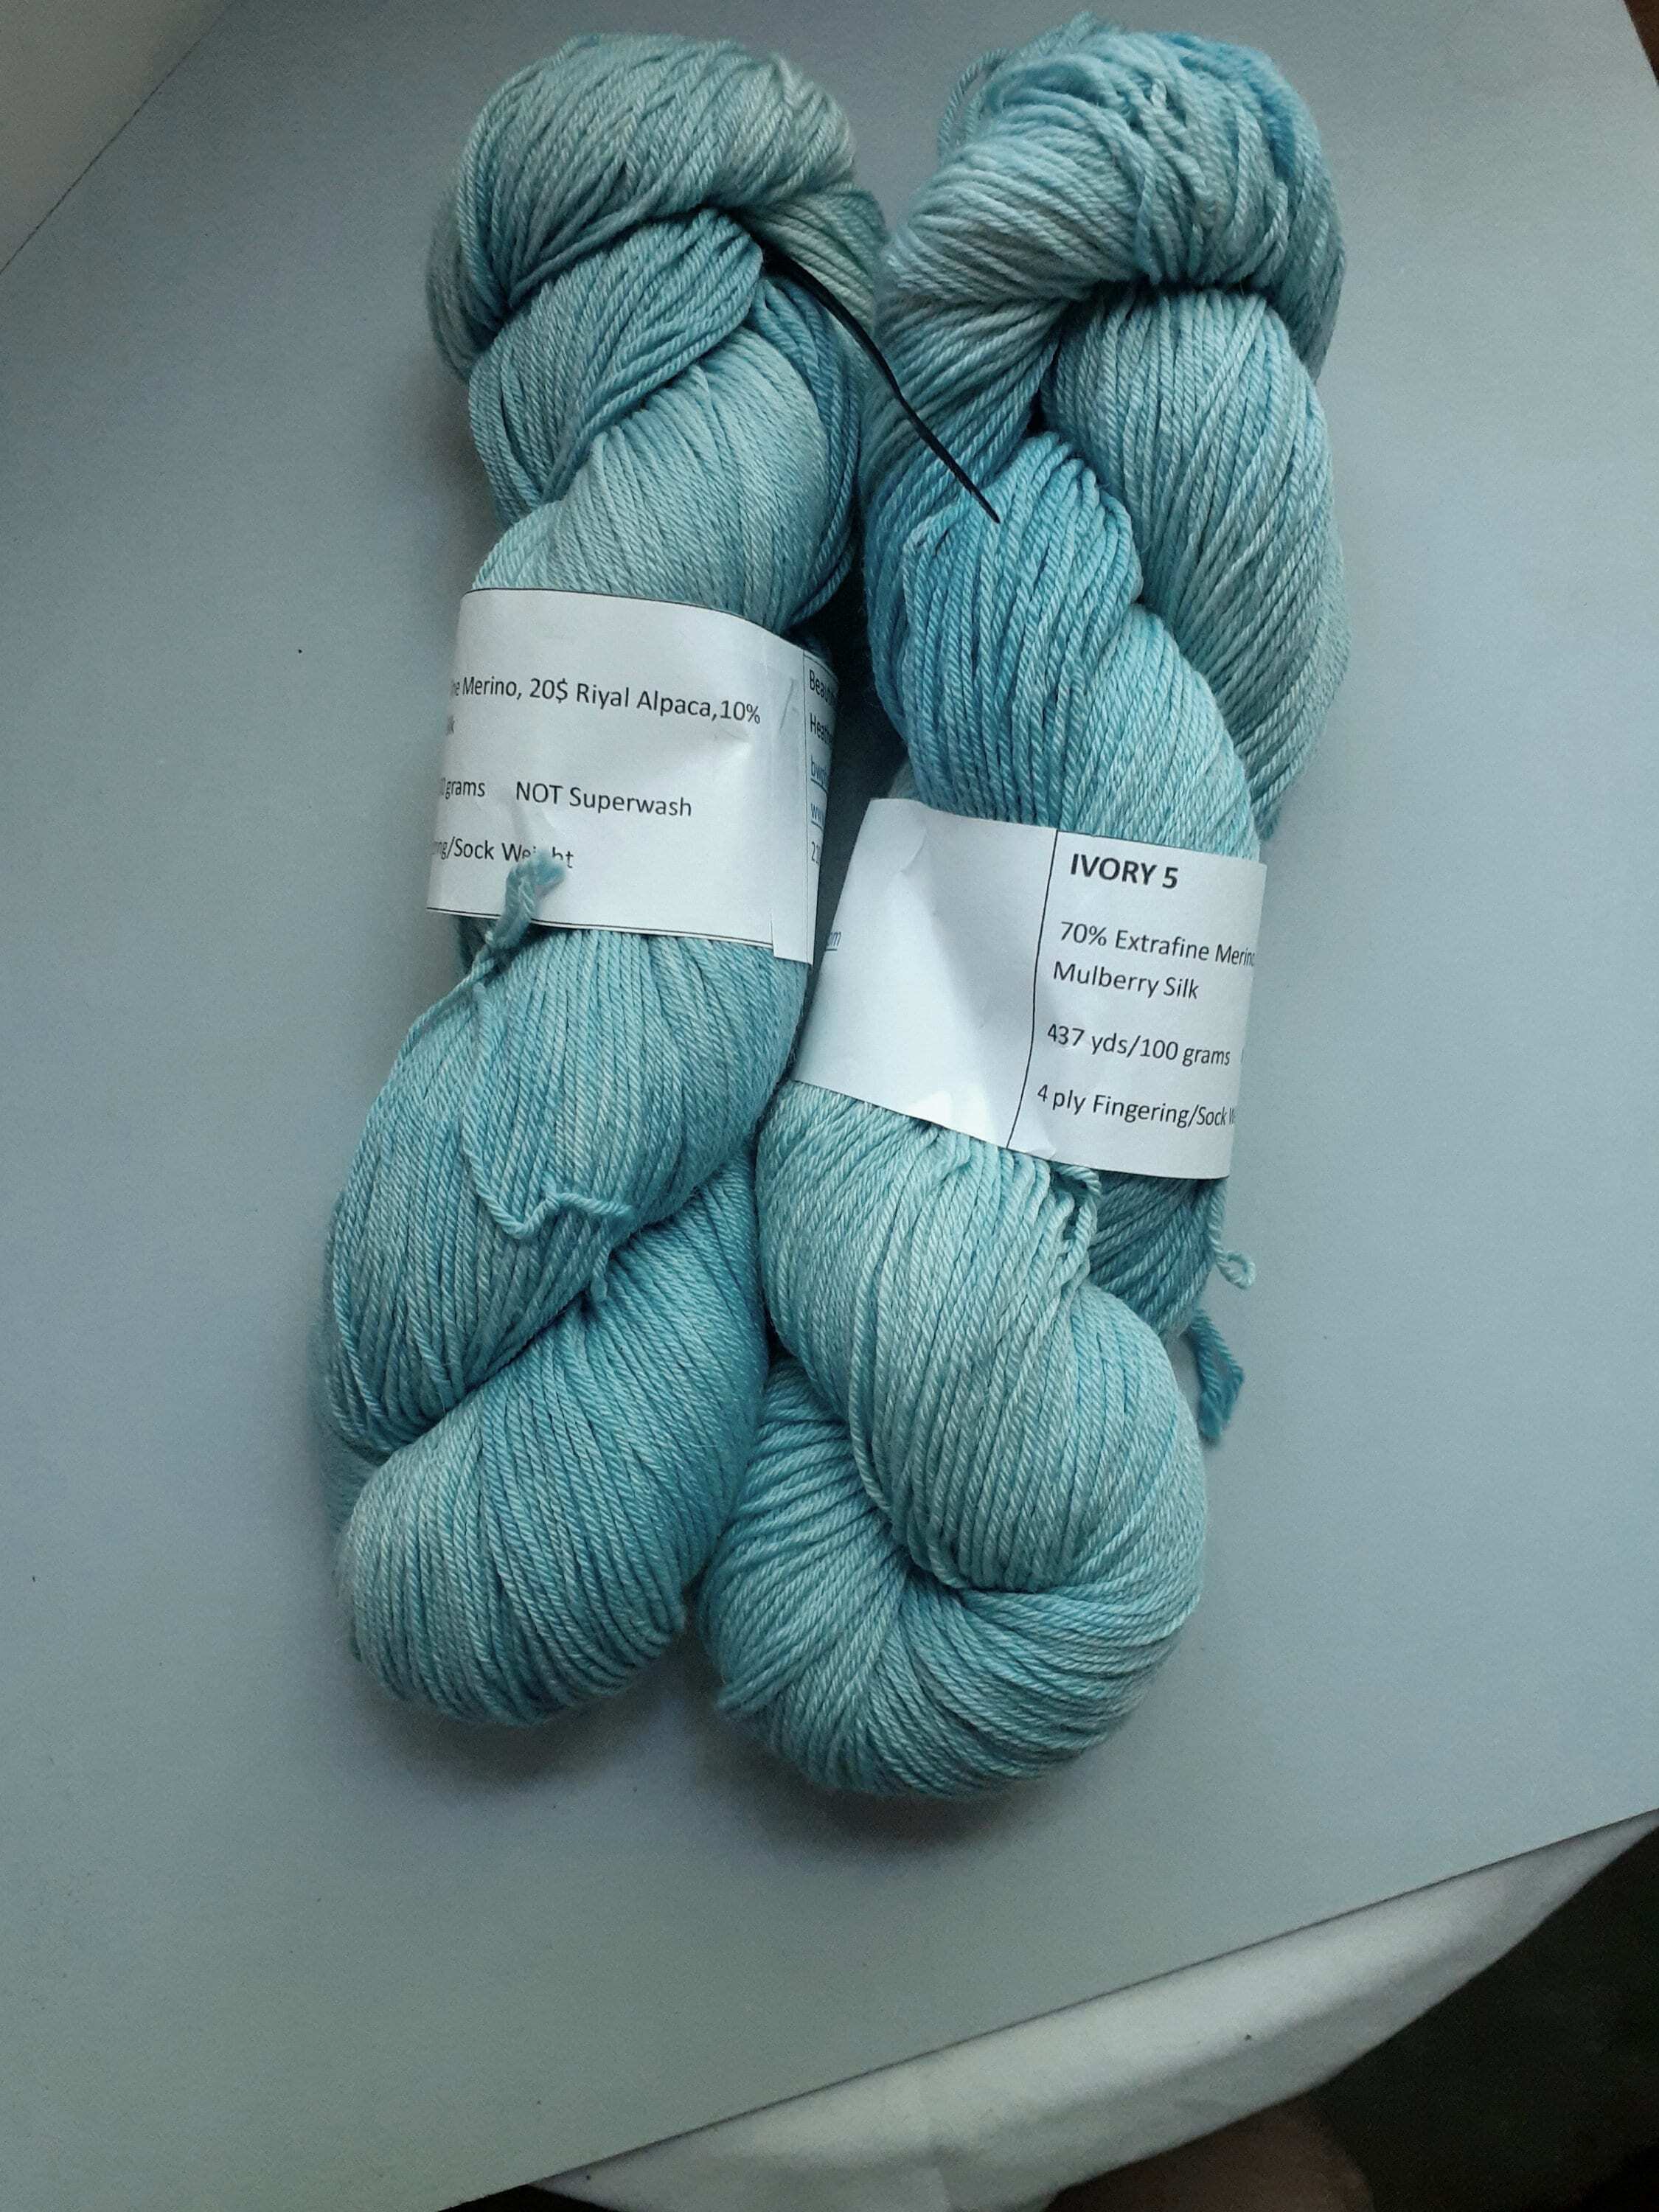 Blend Alpaca Yarn Wool 1 Skein 100 Grams DK Weight